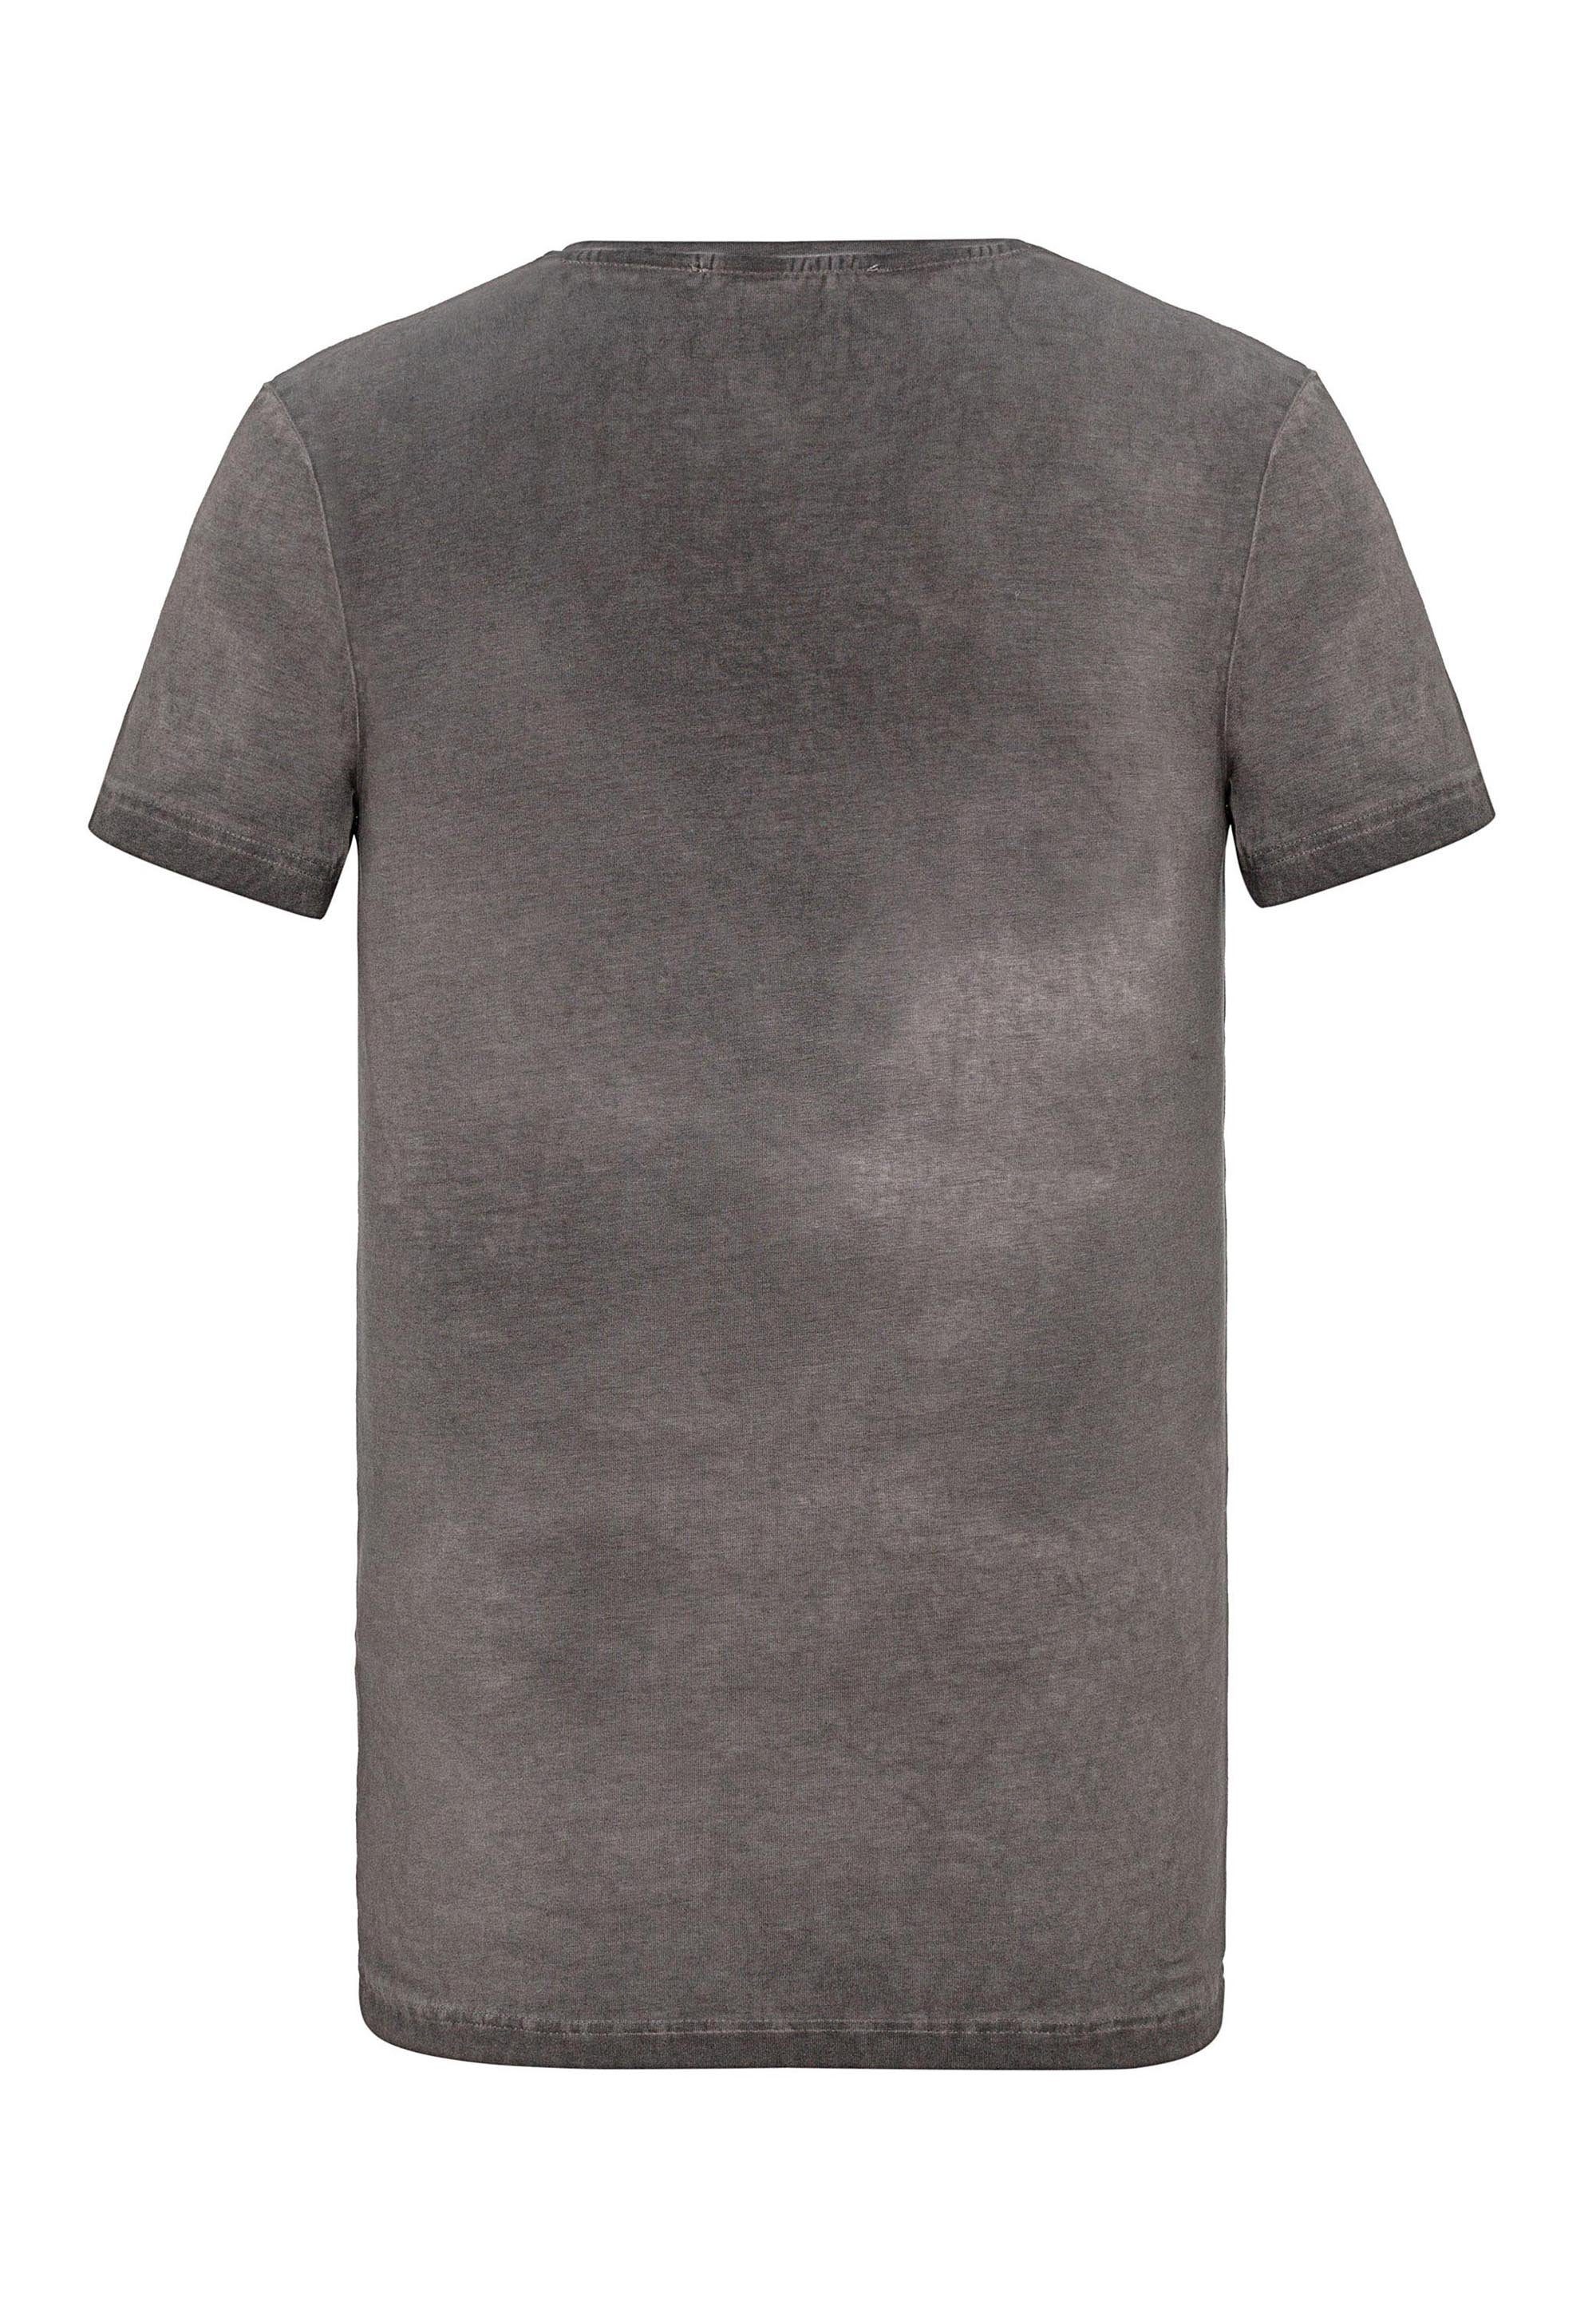 & großem T-Shirt mit Aufdruck Baxx grau Cipo